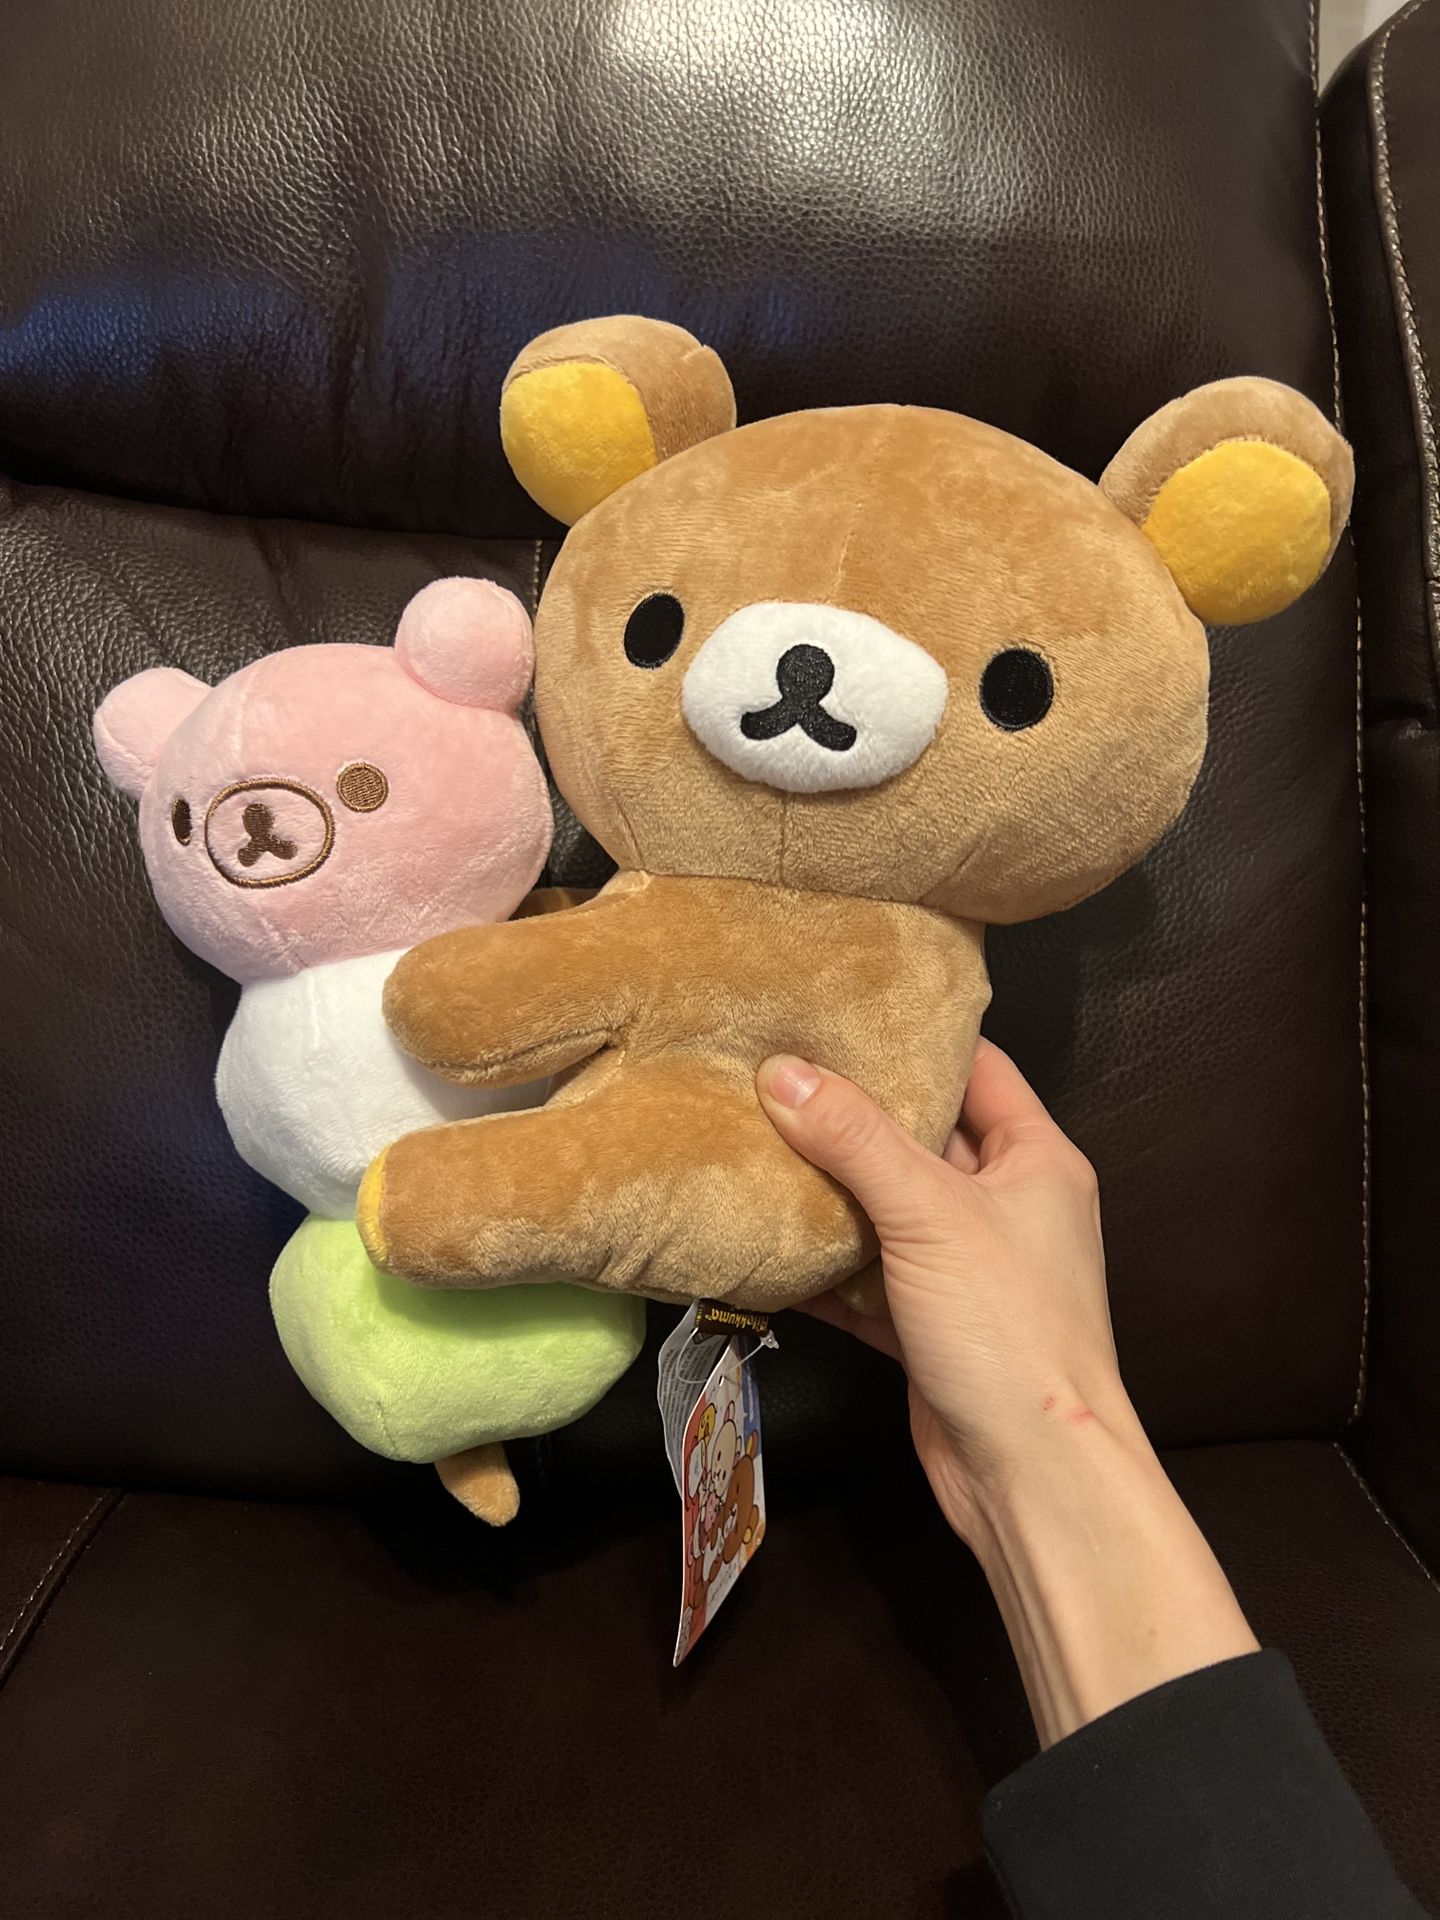 NEW Authentic Rilakkuma Bear on Botchan Dango 13” Plush Toy Stuffed Animal